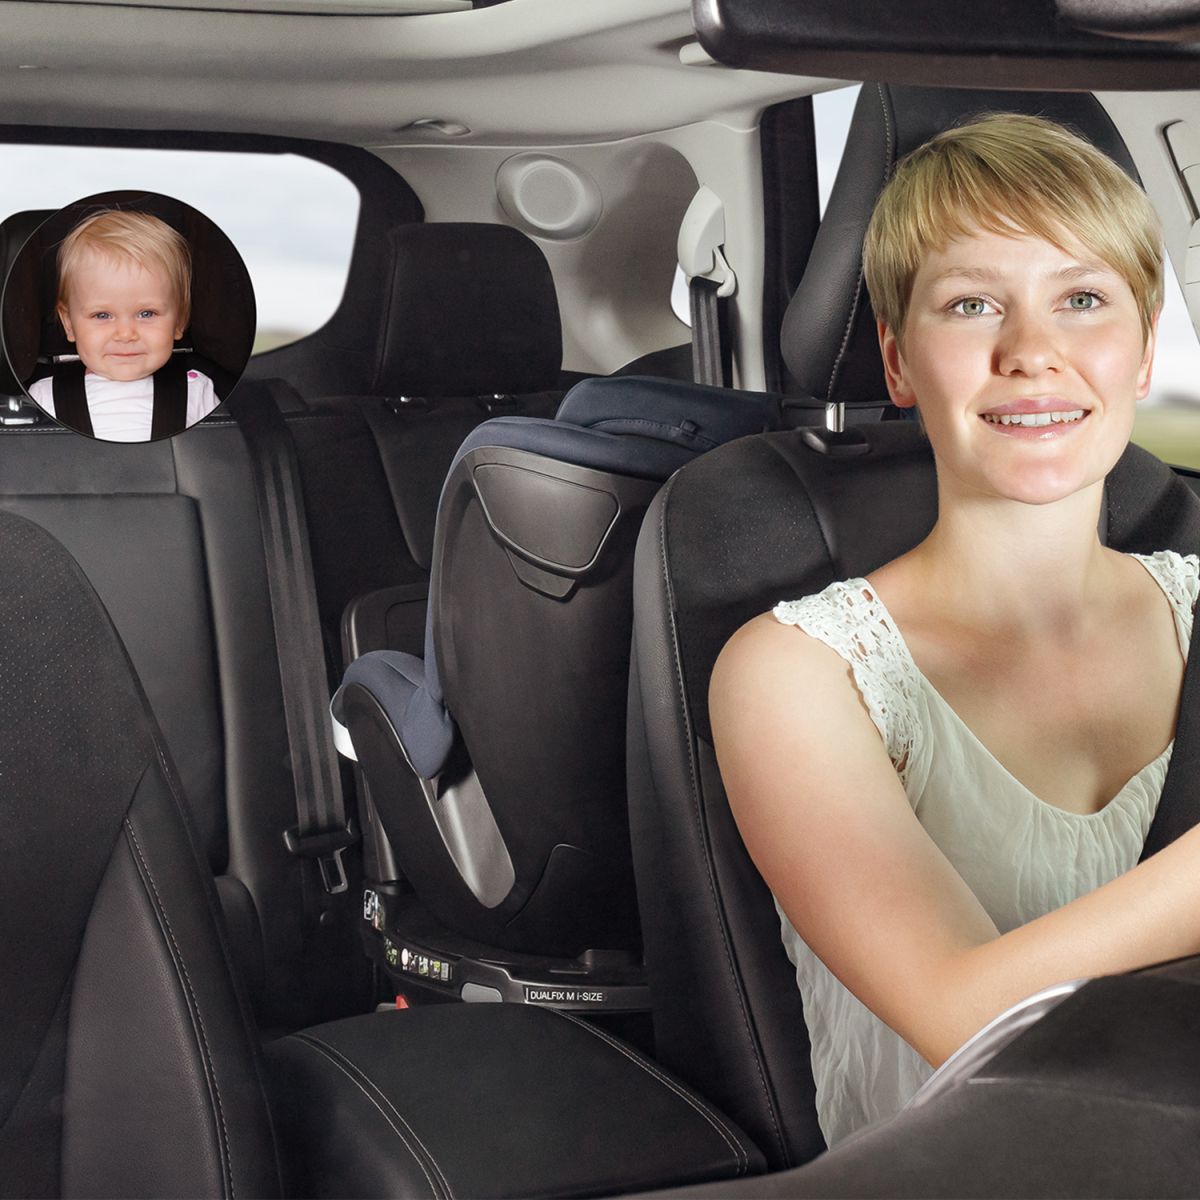 Sicherheitsspiegel , savety view für Babys im Auto, € 7,- (8044 Mariatrost)  - willhaben